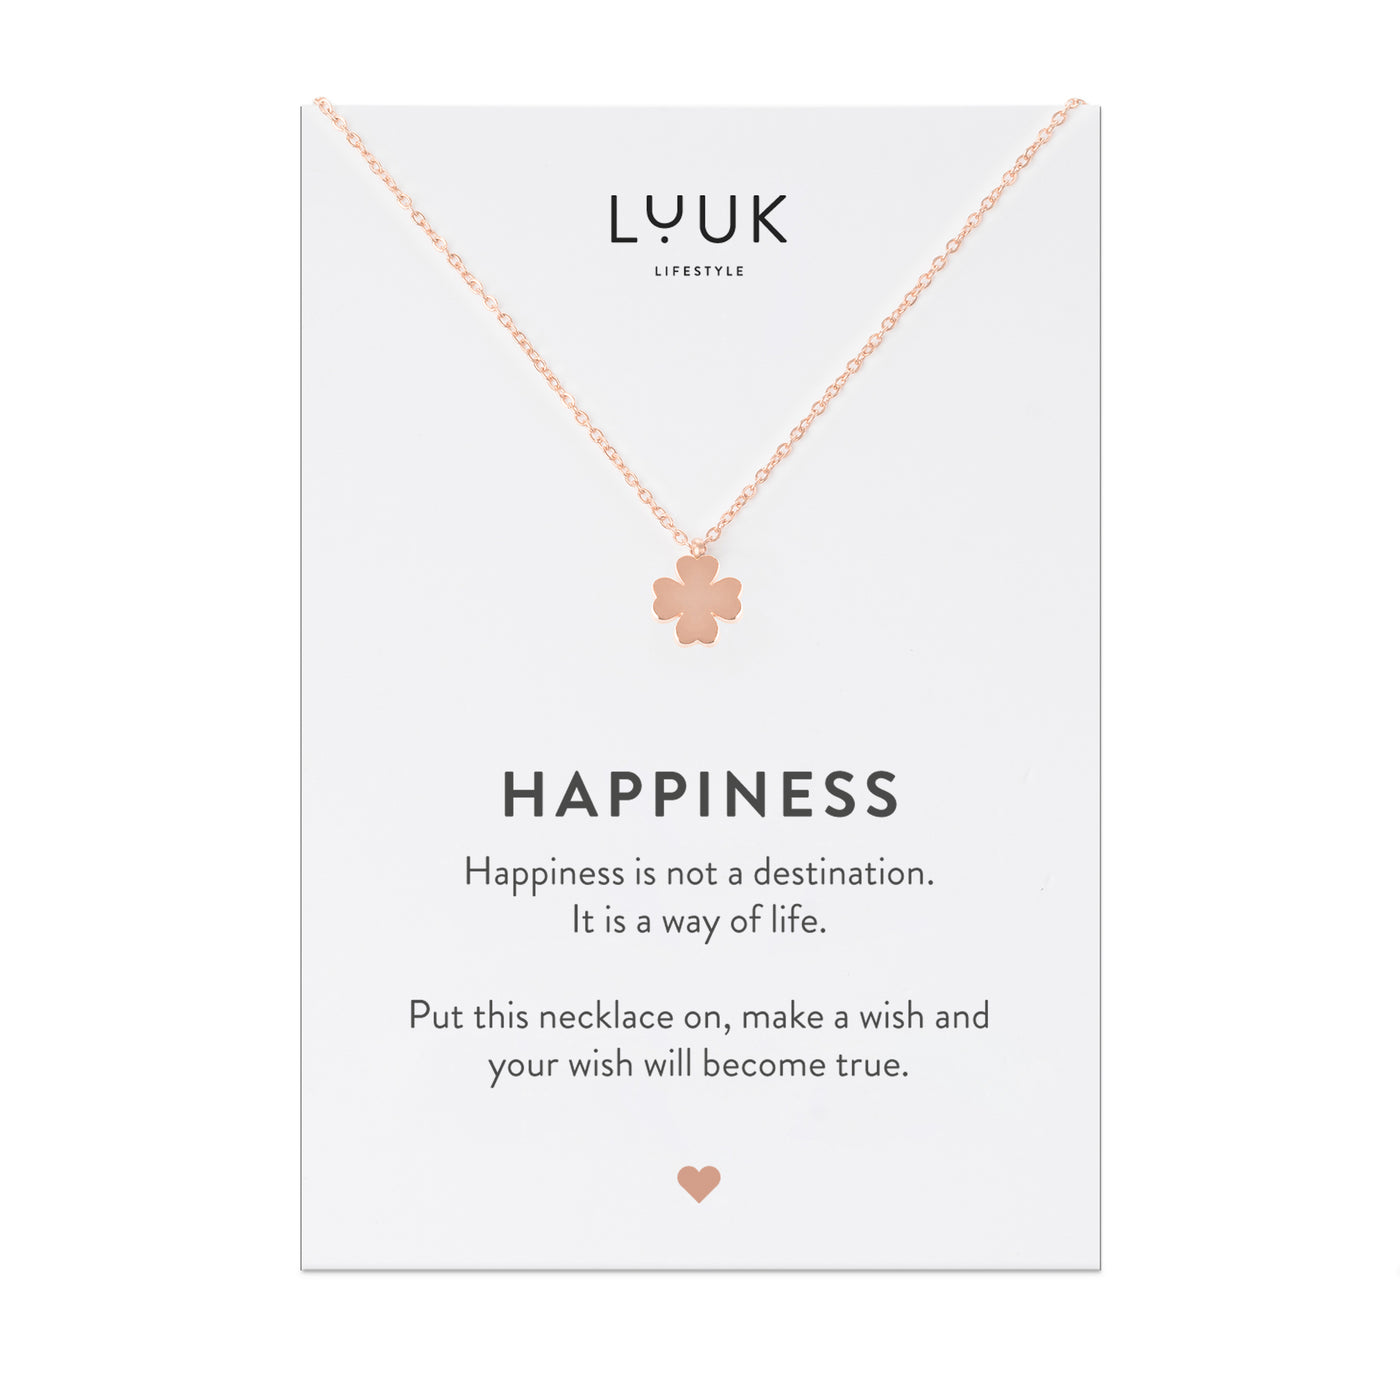 Halskette mit Kleeblatt Anhänger in Rosegold auf Happiness Spruchkarte von Luuk Lifestyle 